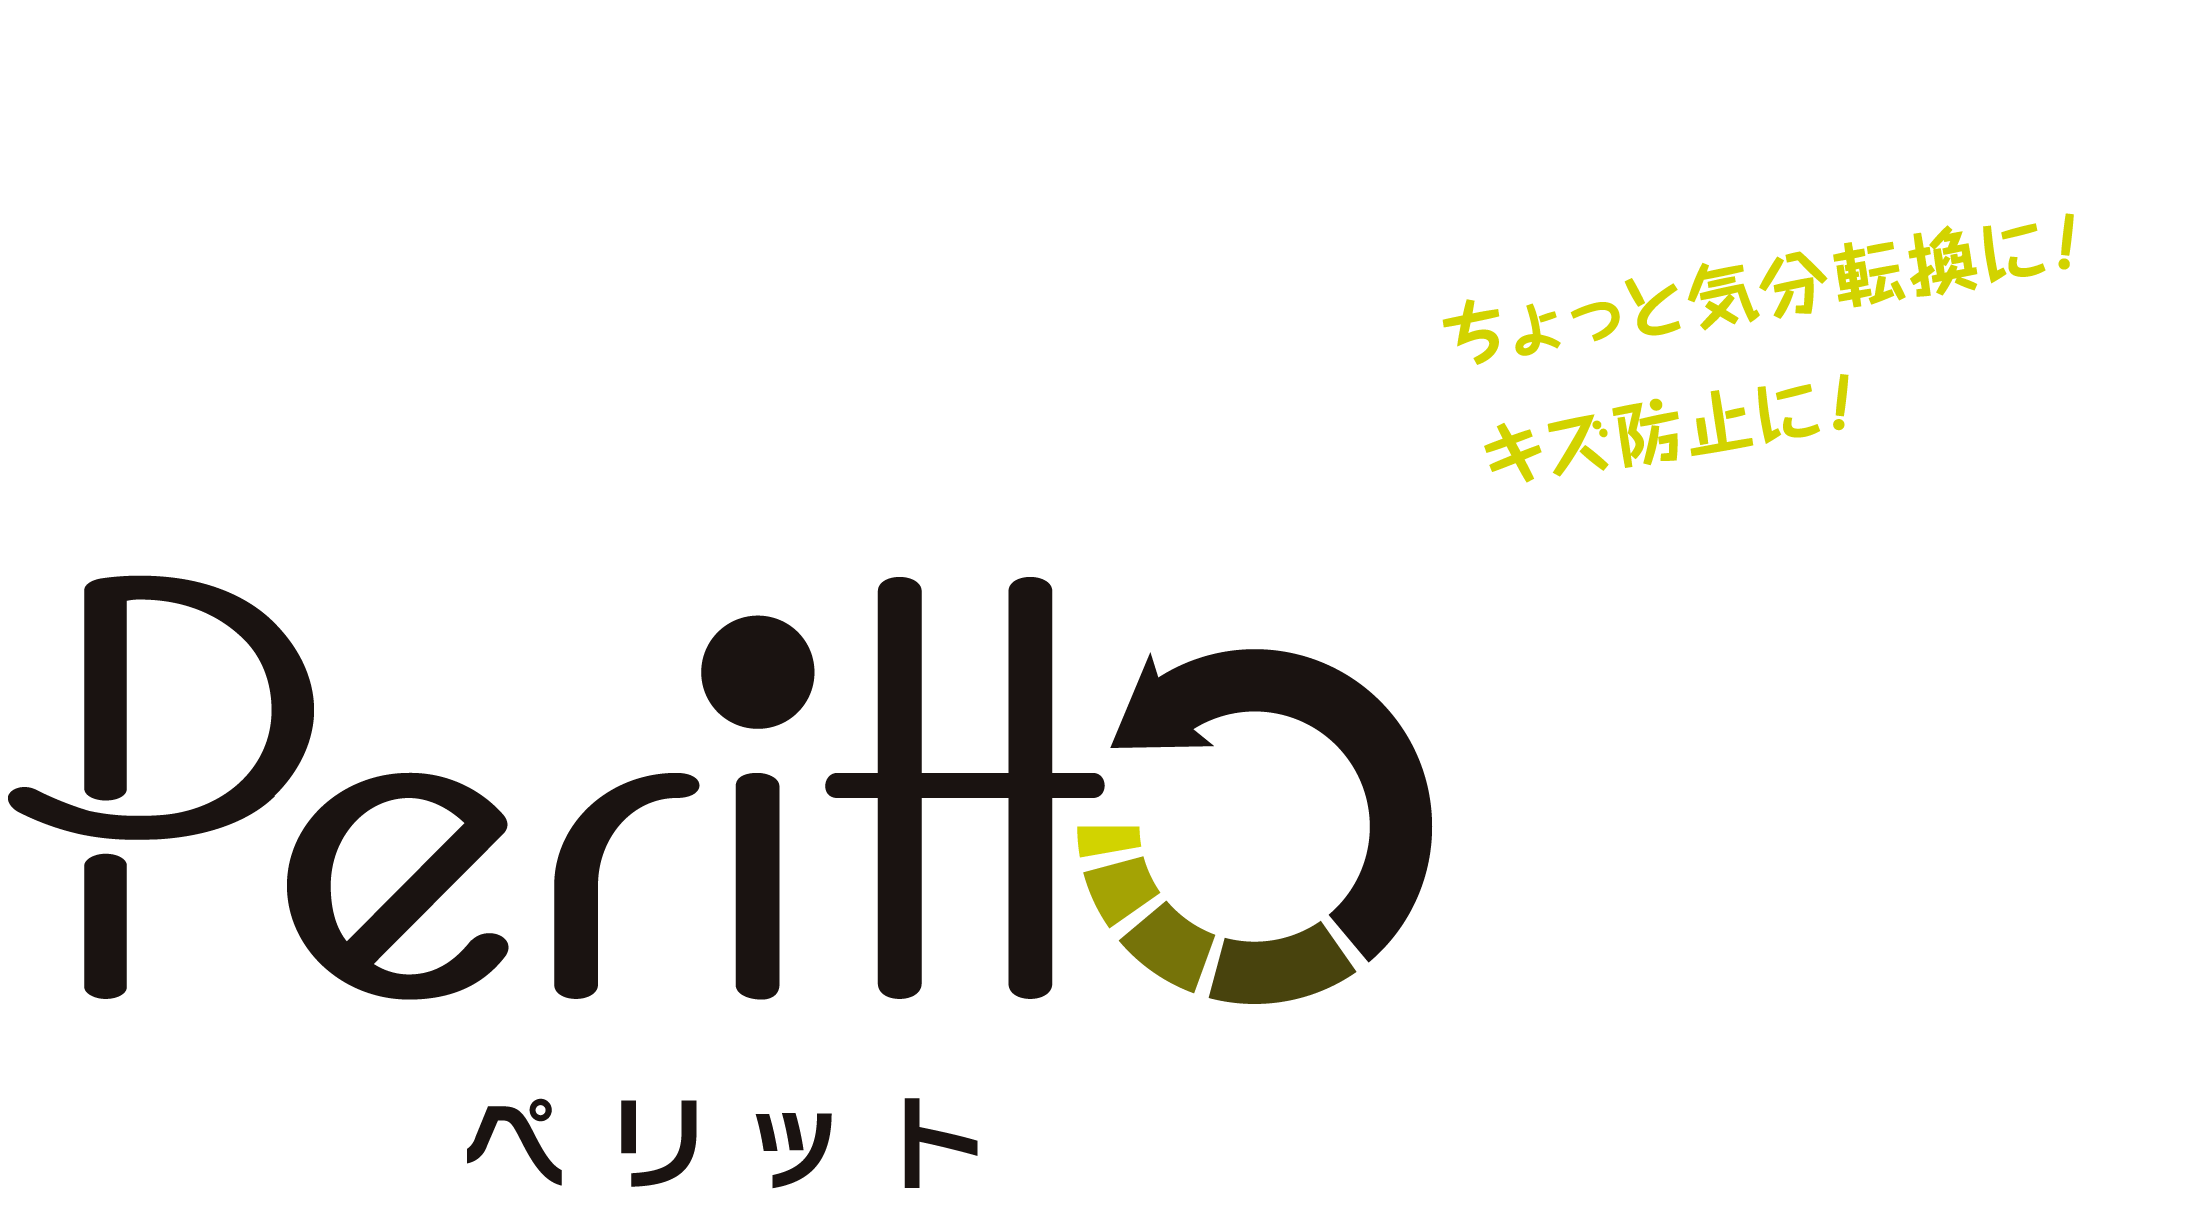 Peritto | 武蔵ホルト株式会社